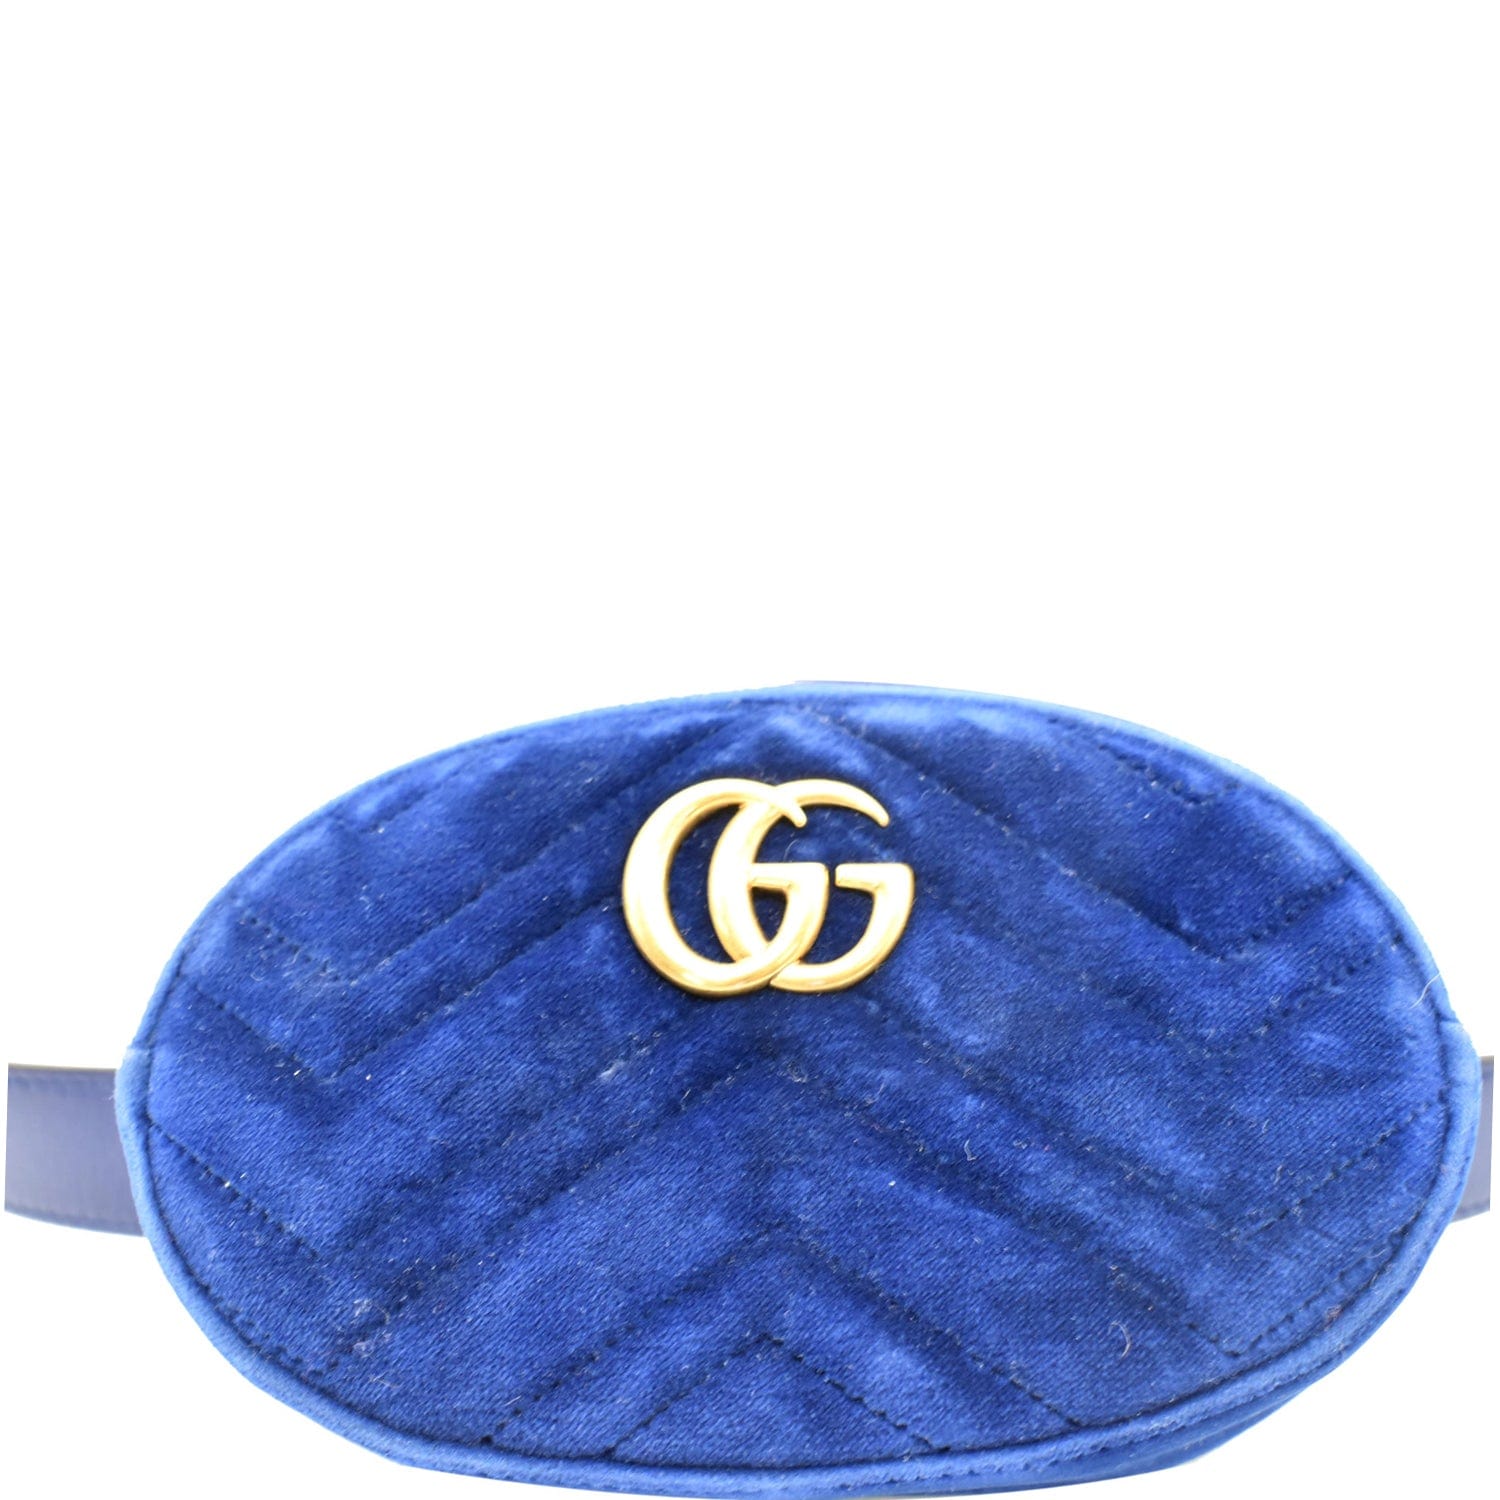 Gucci Marmont Embroidered Velvet Belt Bag